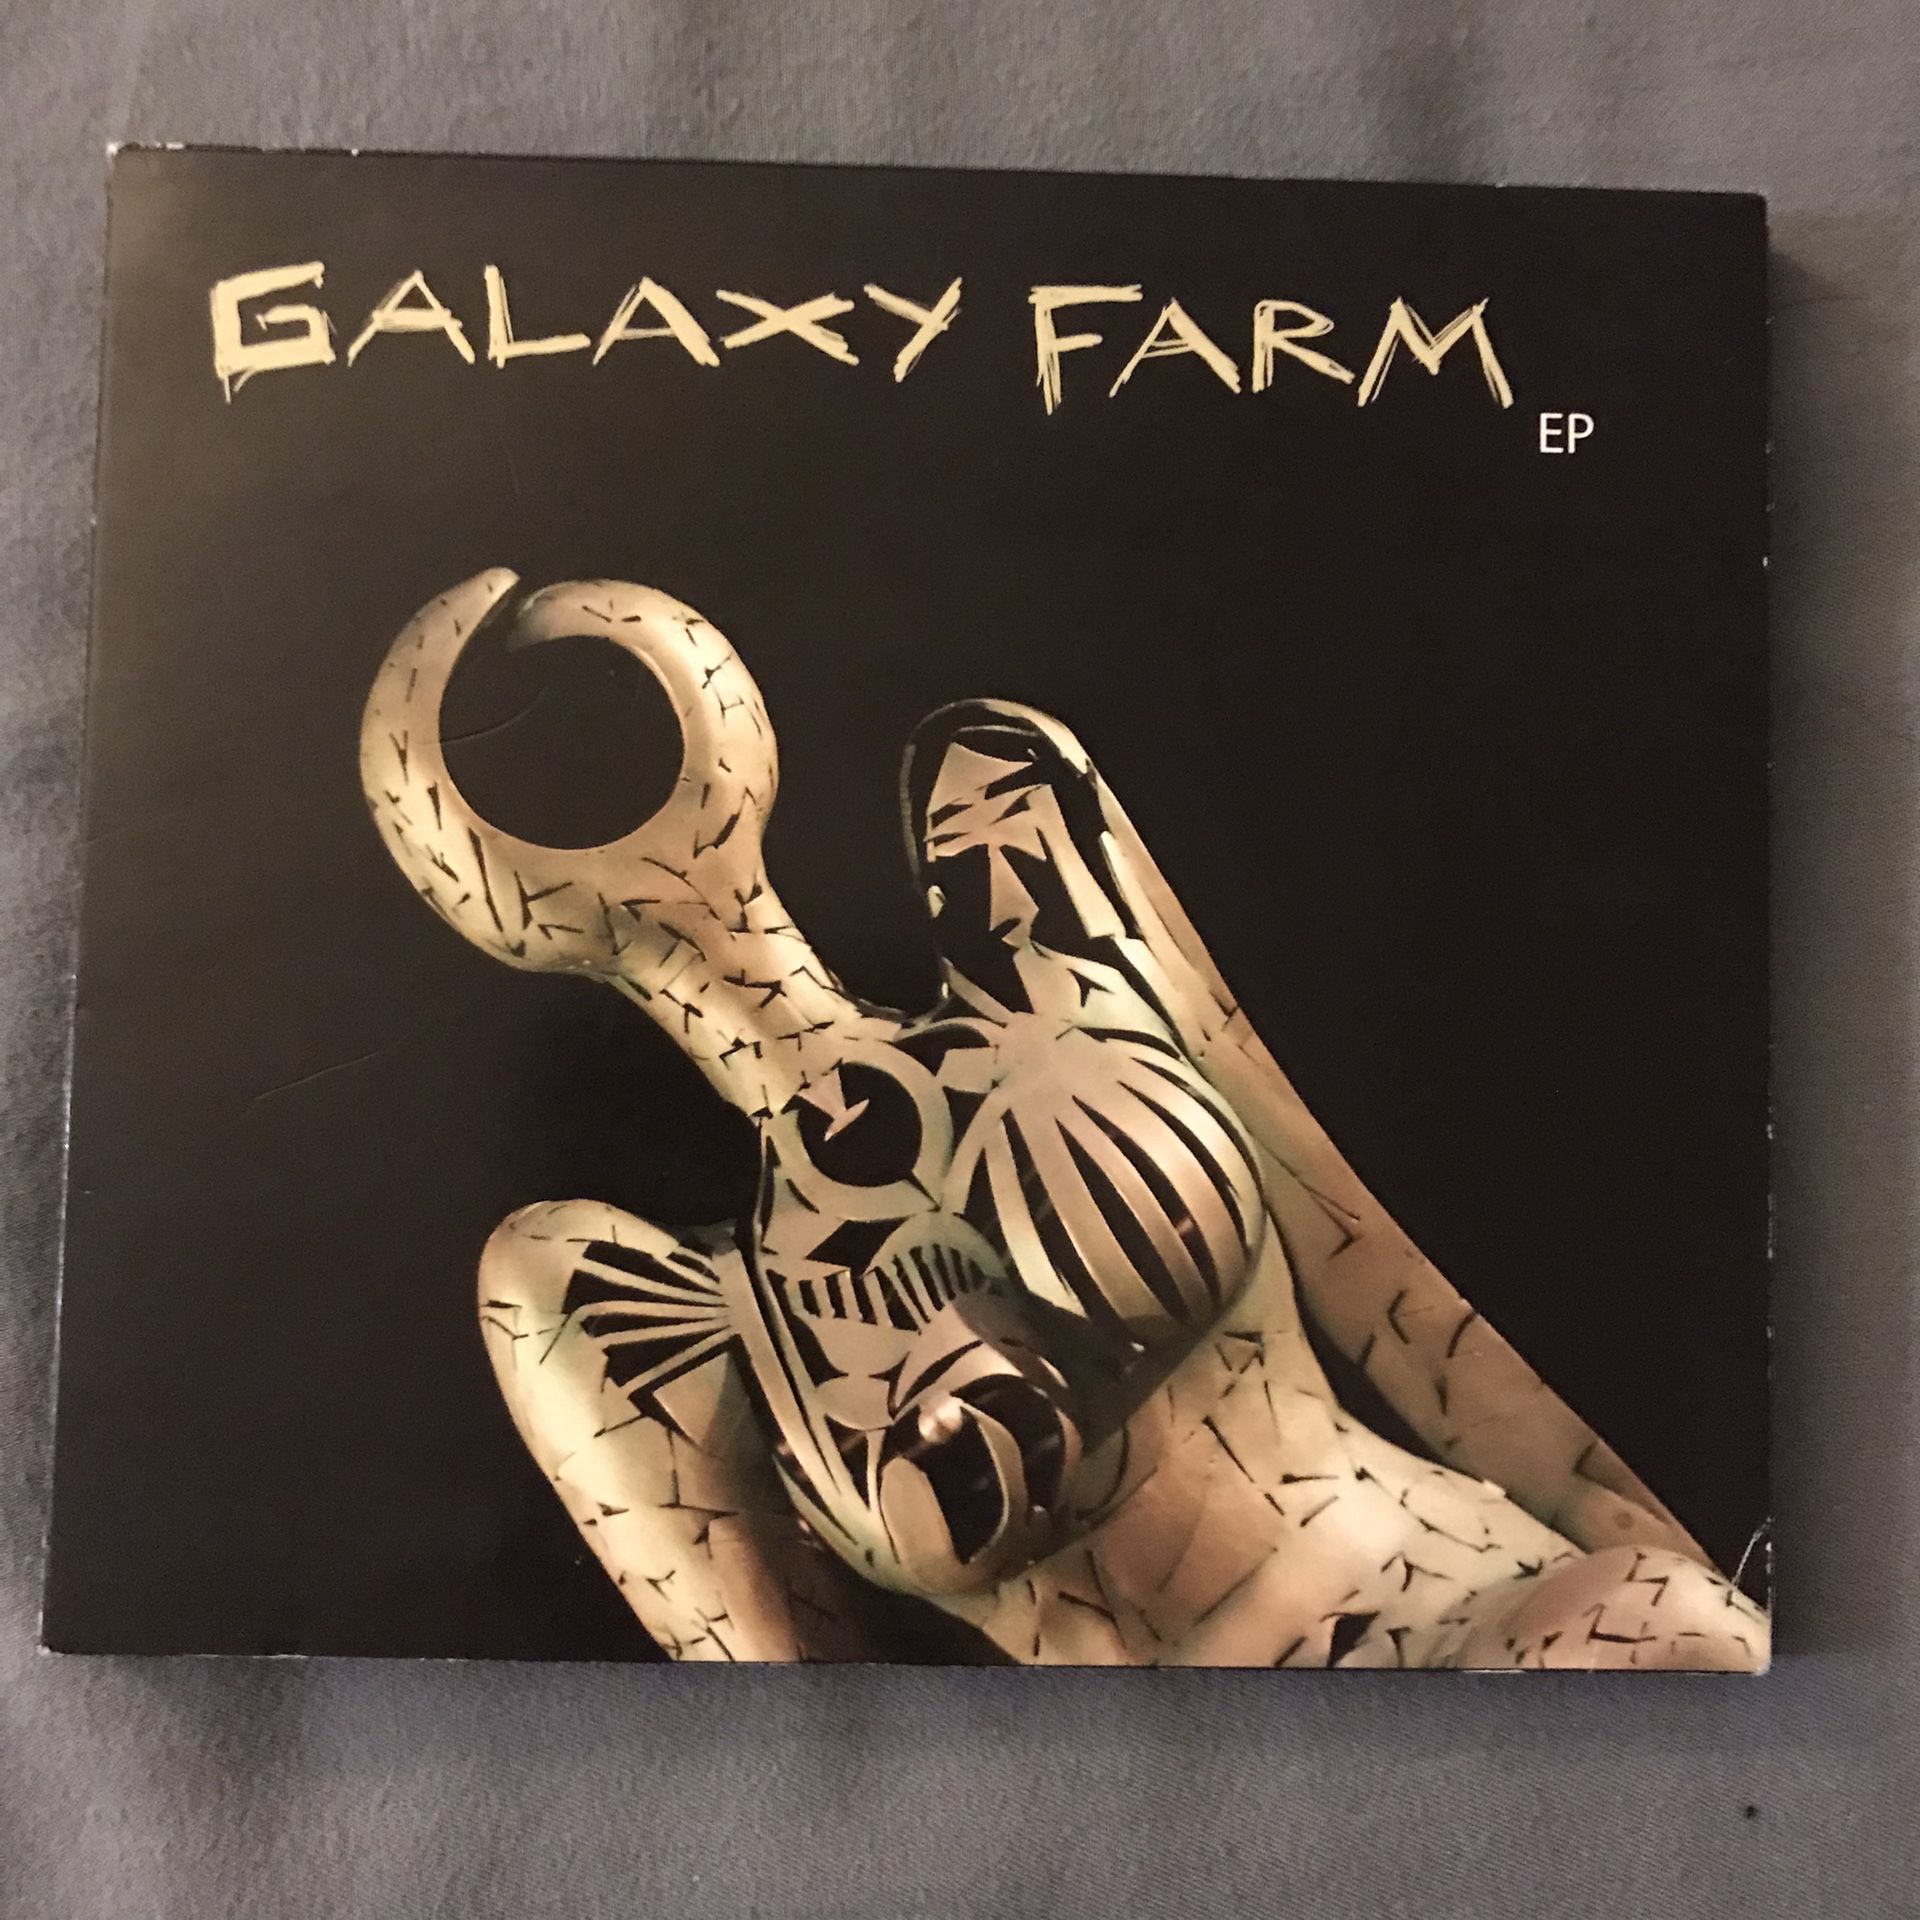 Galaxy Farm EP On CD 